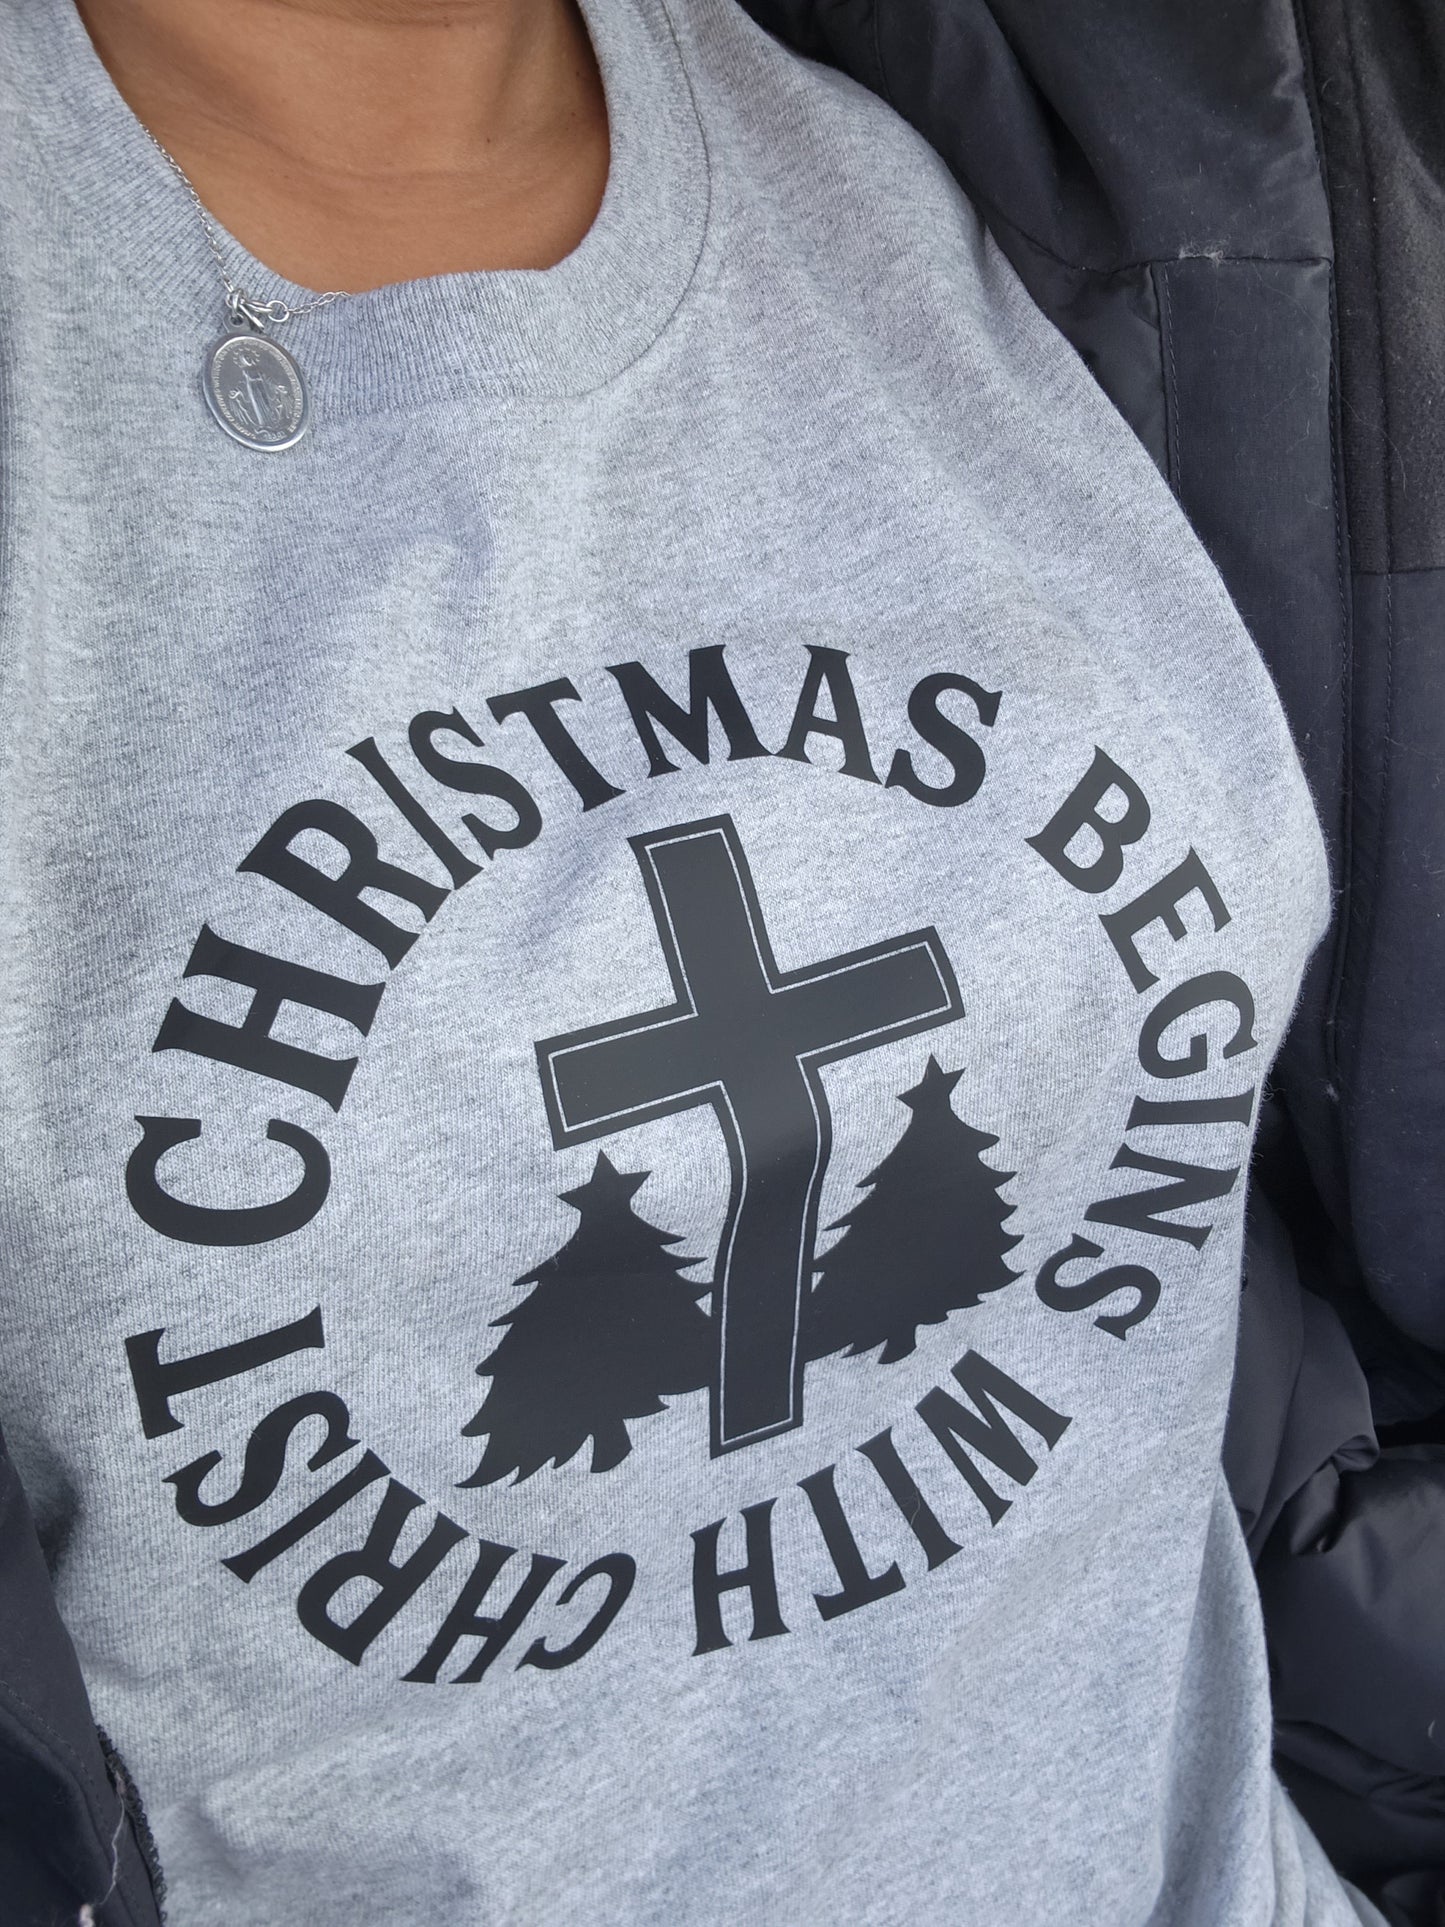 La Navidad comienza con la camisa de Cristo